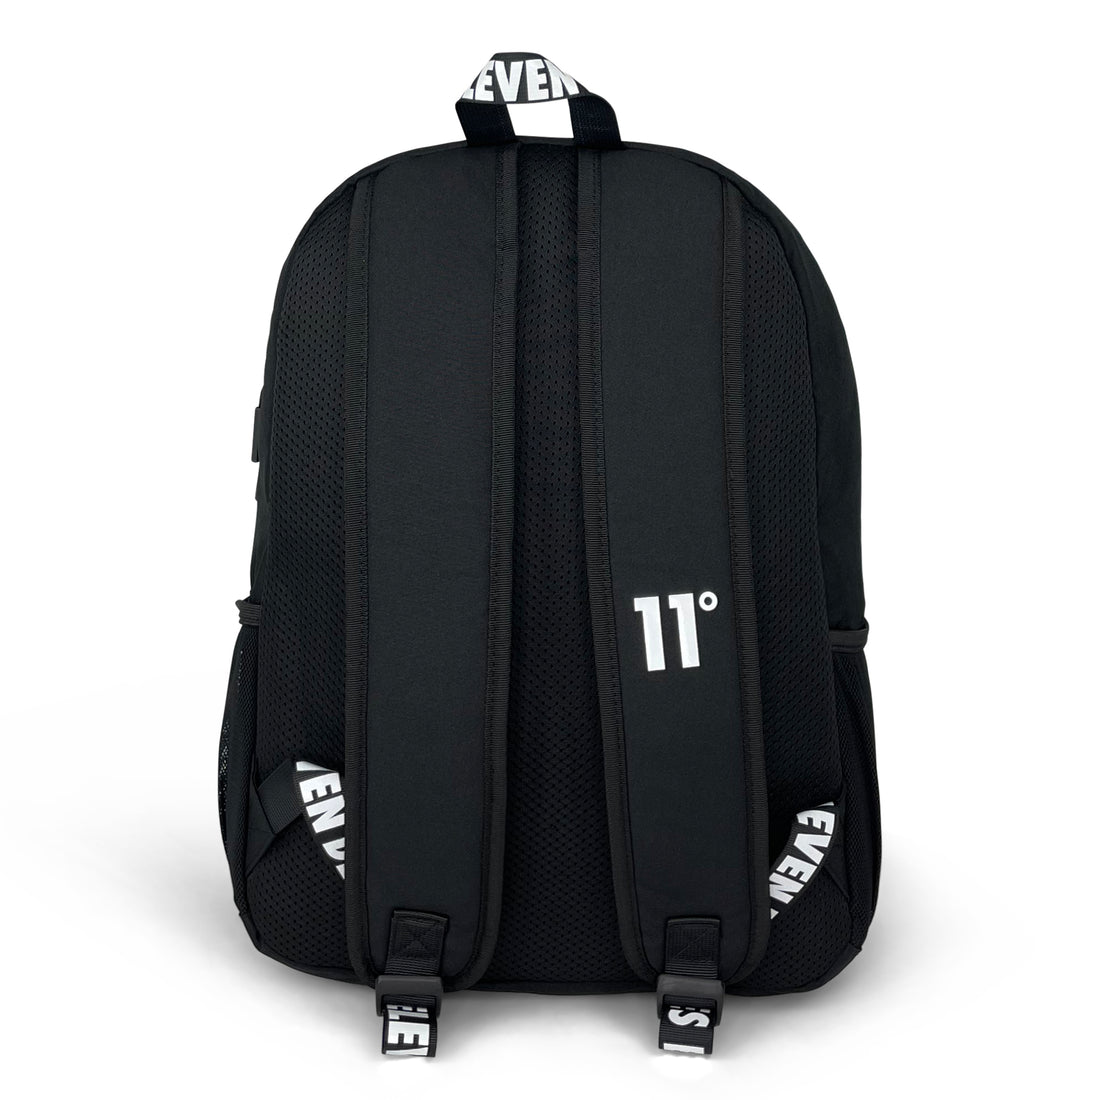 Printed Front Backpack-Backpack-11 Degrees-Black-SchoolBagsAndStuff